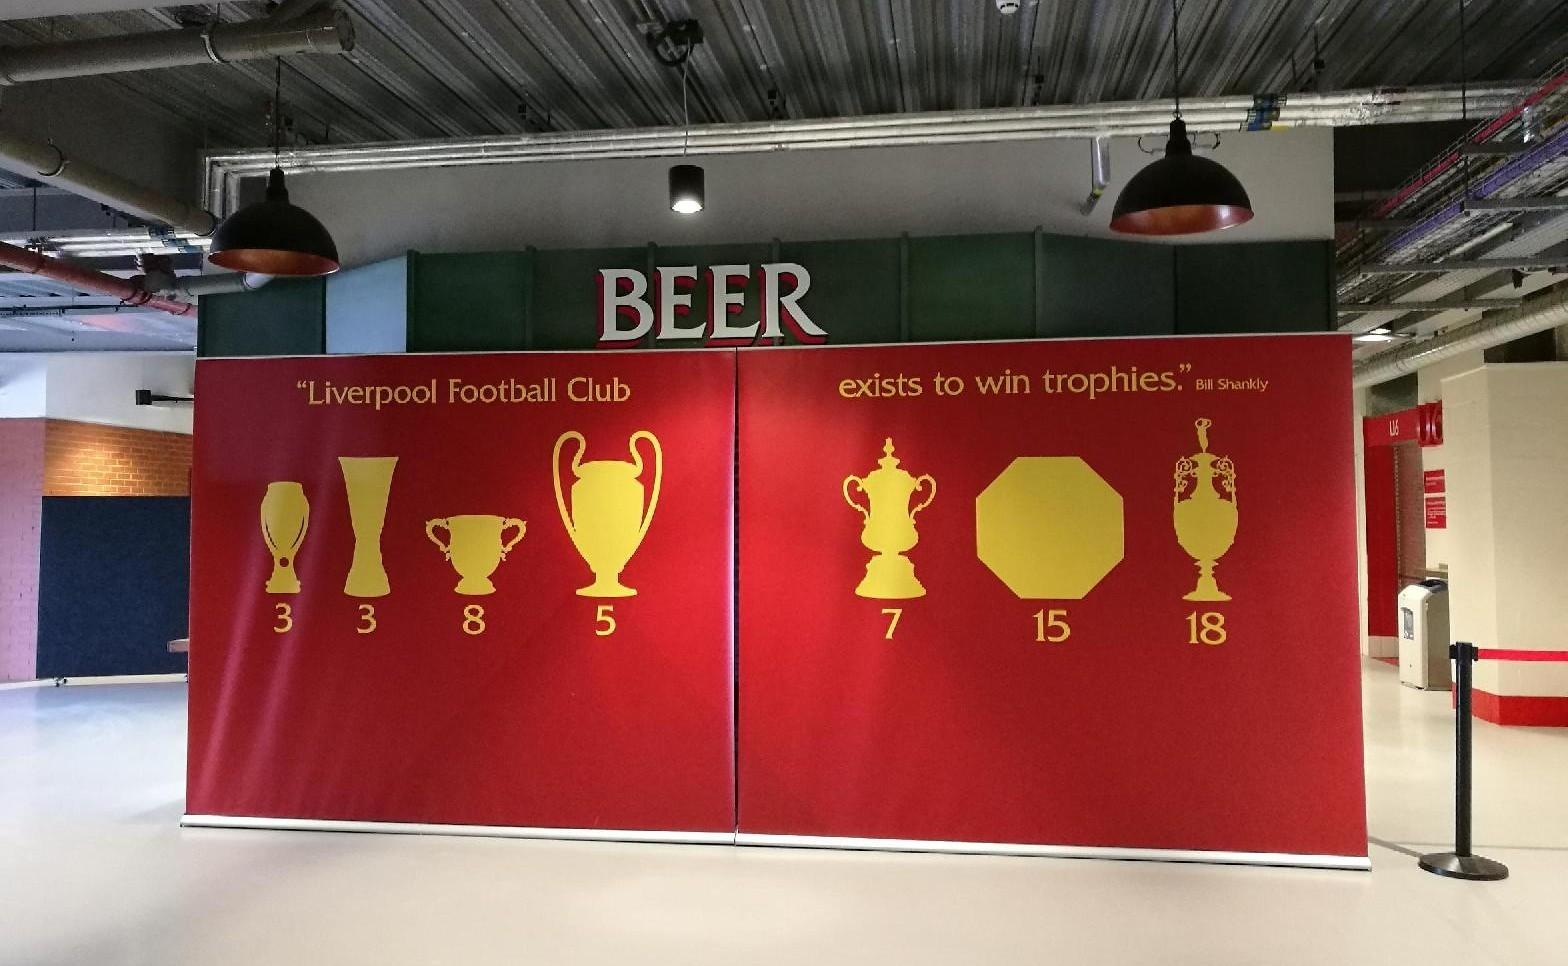 Liverpool-Roma, la guida definitiva per chi va in trasferta: pub e attività gratuite nella zona di Anfield